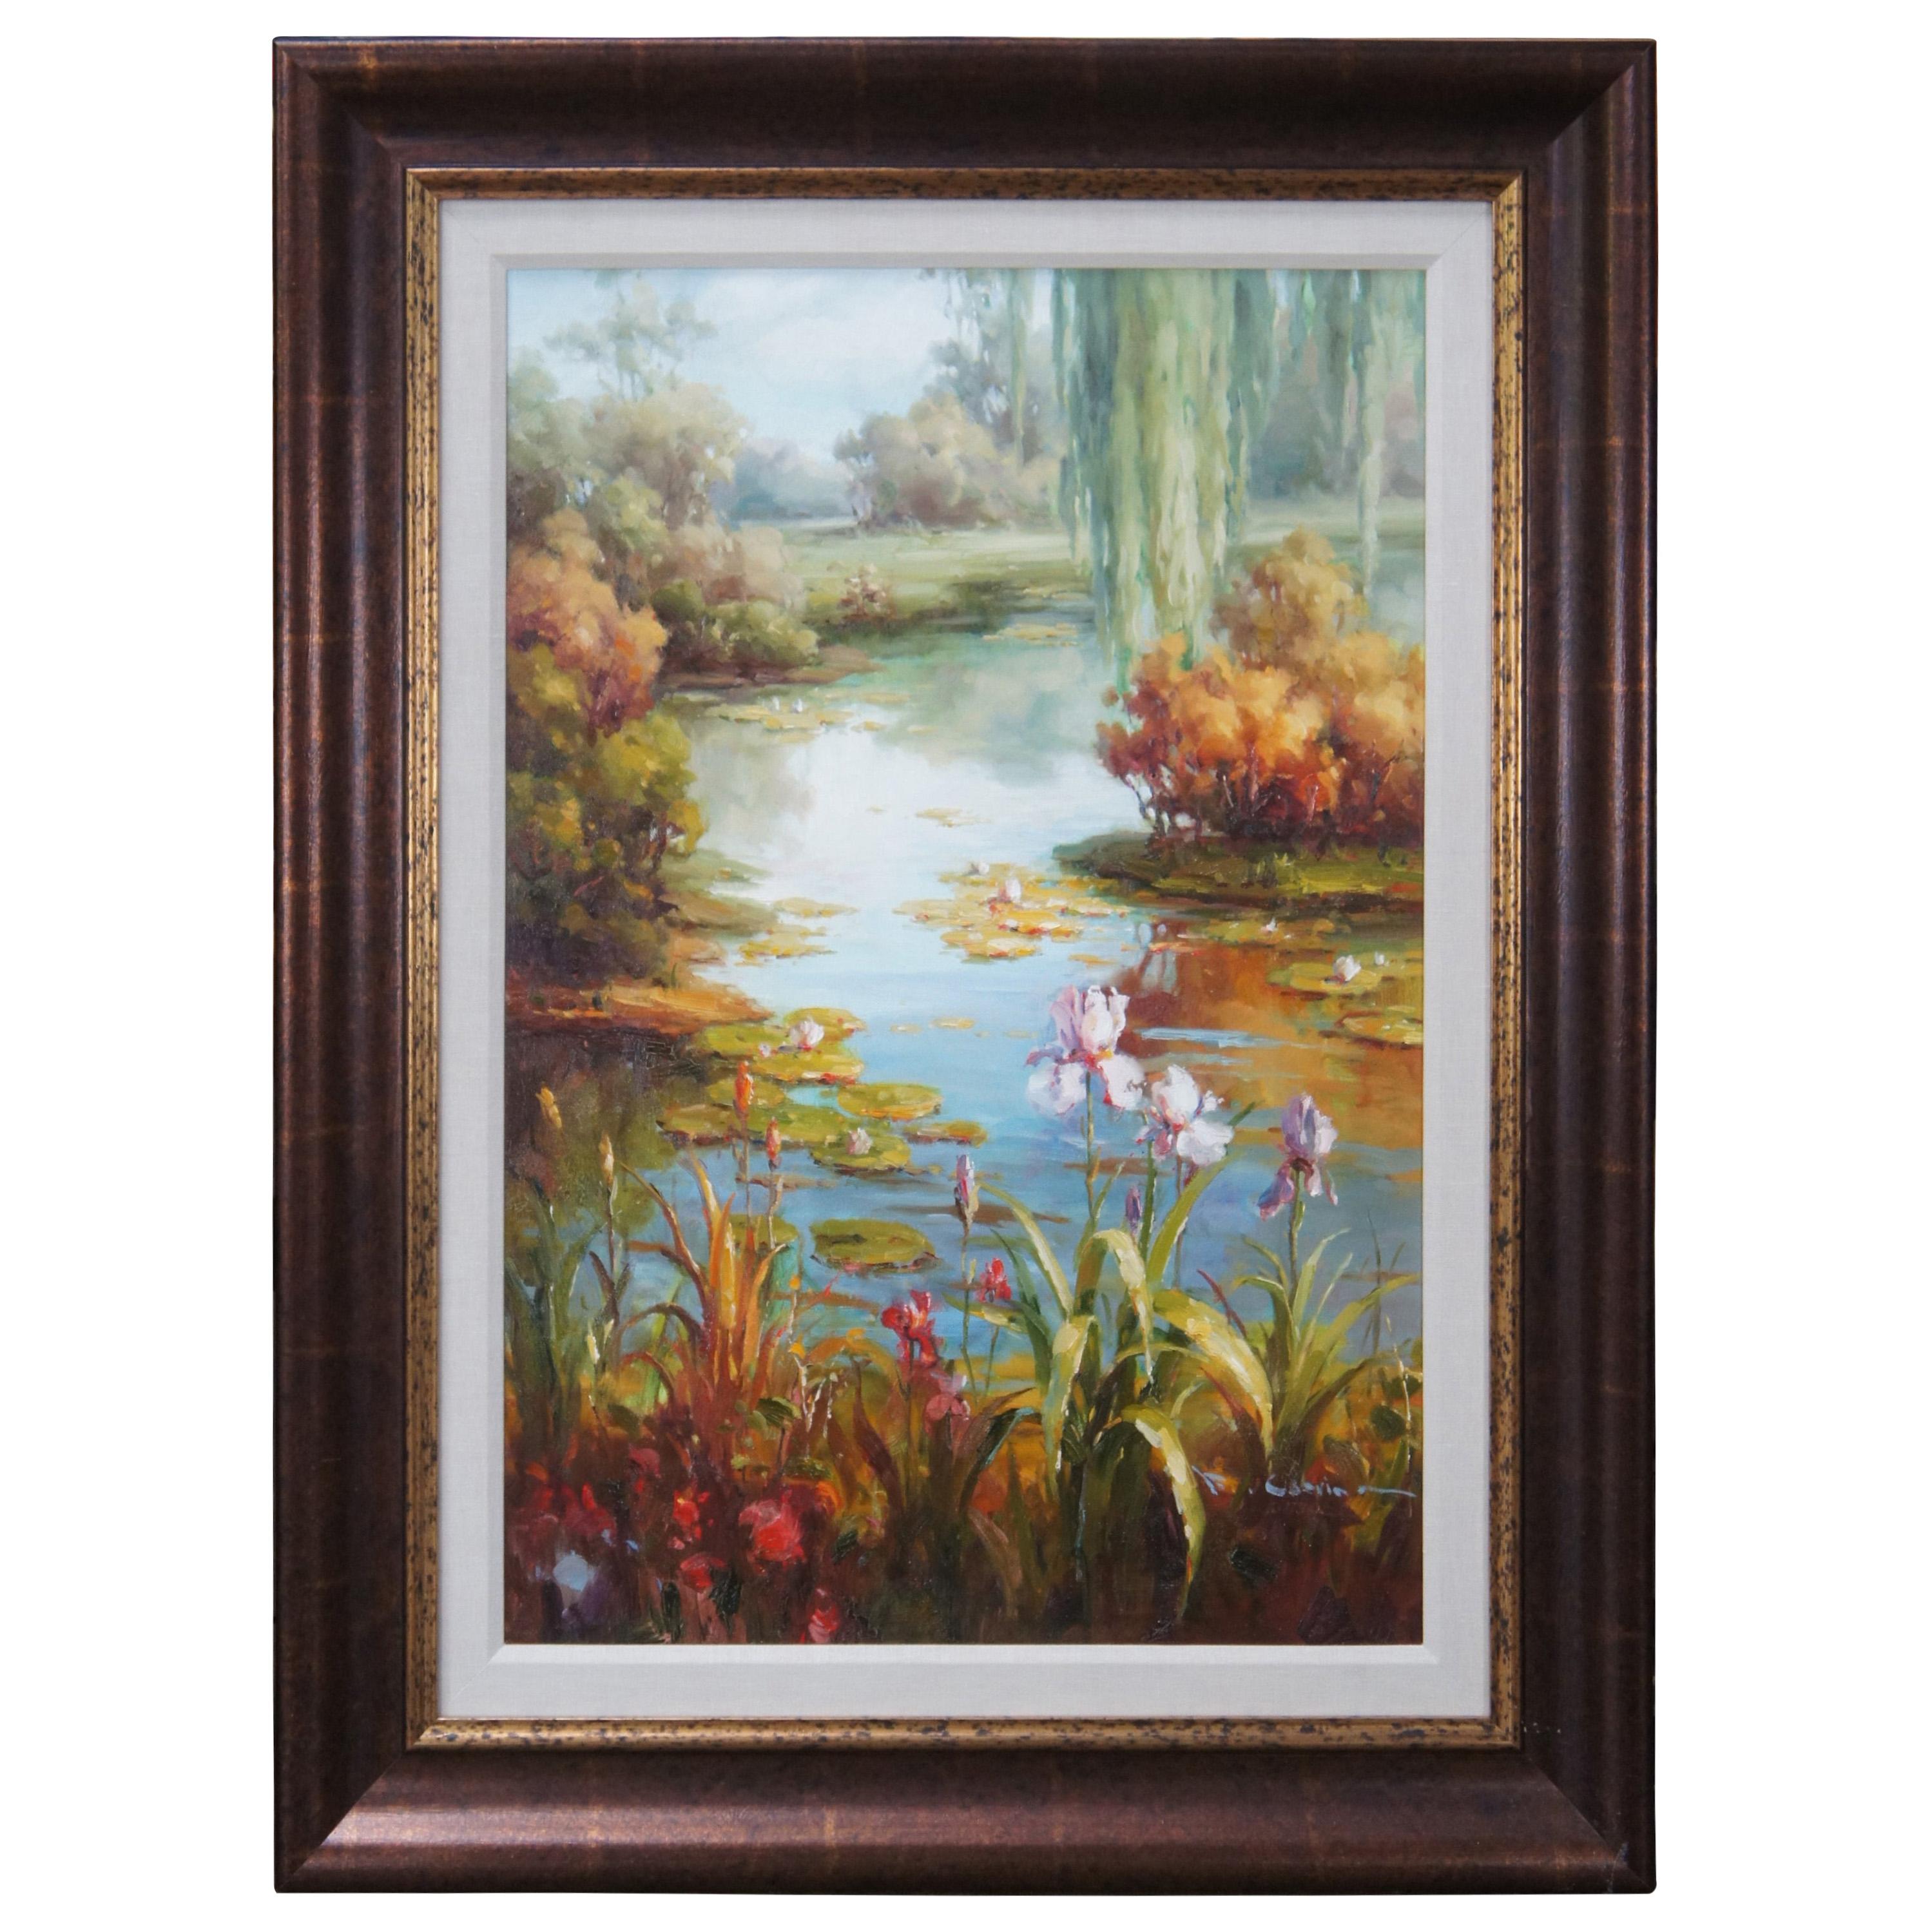 Peinture à l'huile originale sur toile - Scène de lac - Réalisme floral de nénuphar en bord de lac - 47 po.